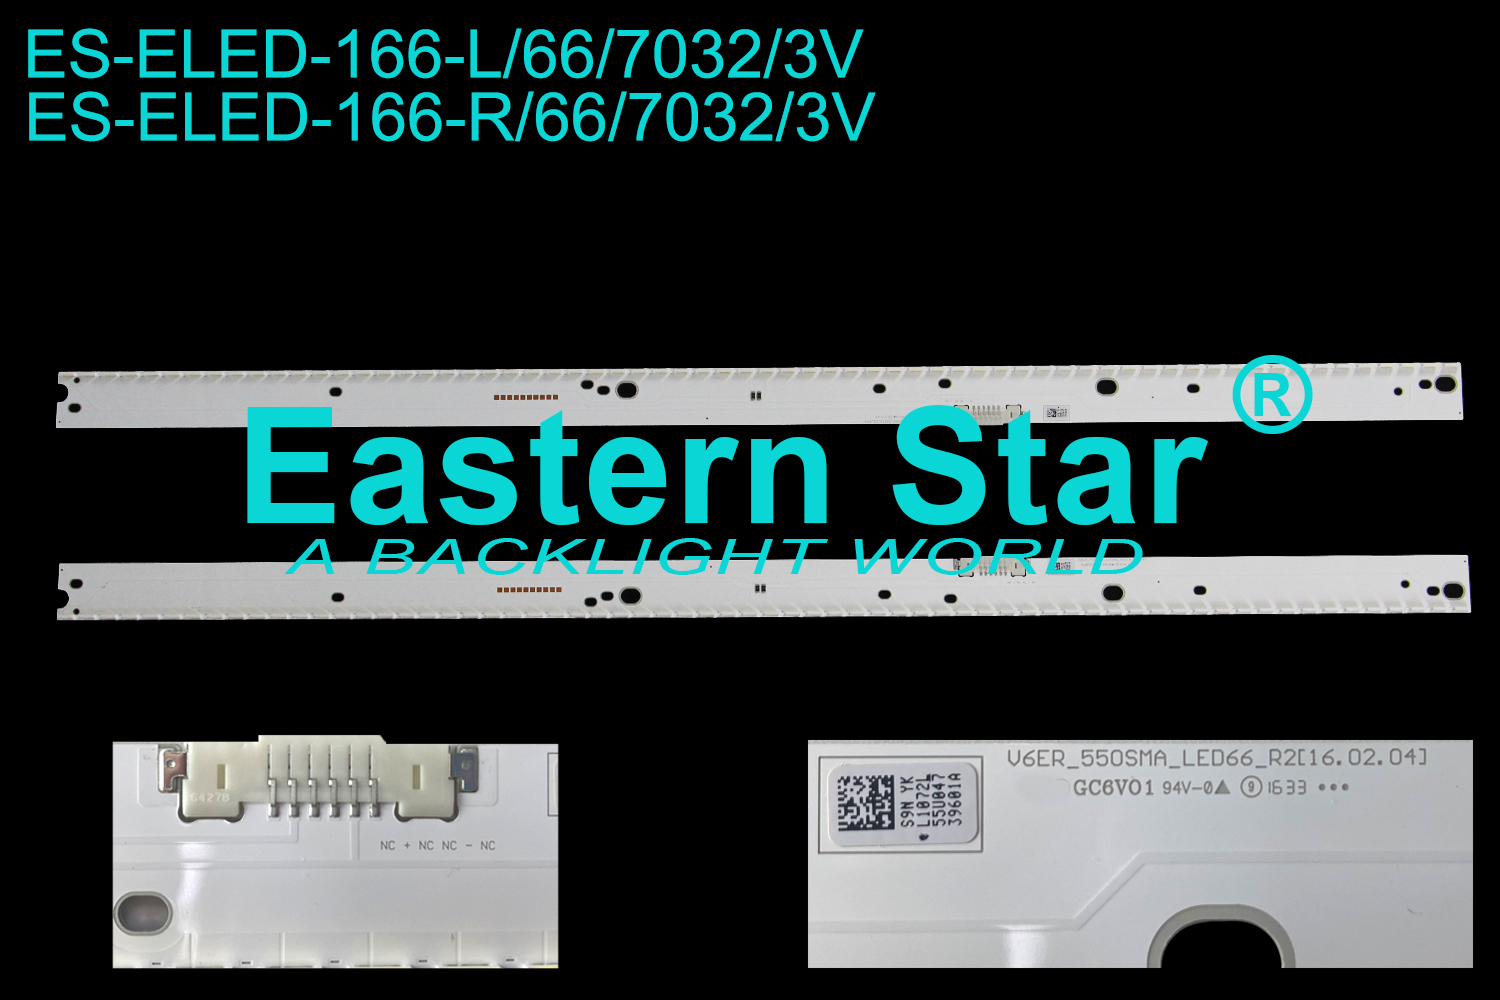 ES-ELED-166 ELED/EDGE TV backlight use for Samsung 55'' 66LEDs V6ER_550SMB_LED66_R2[16.02.04] LED STRIPS(2)